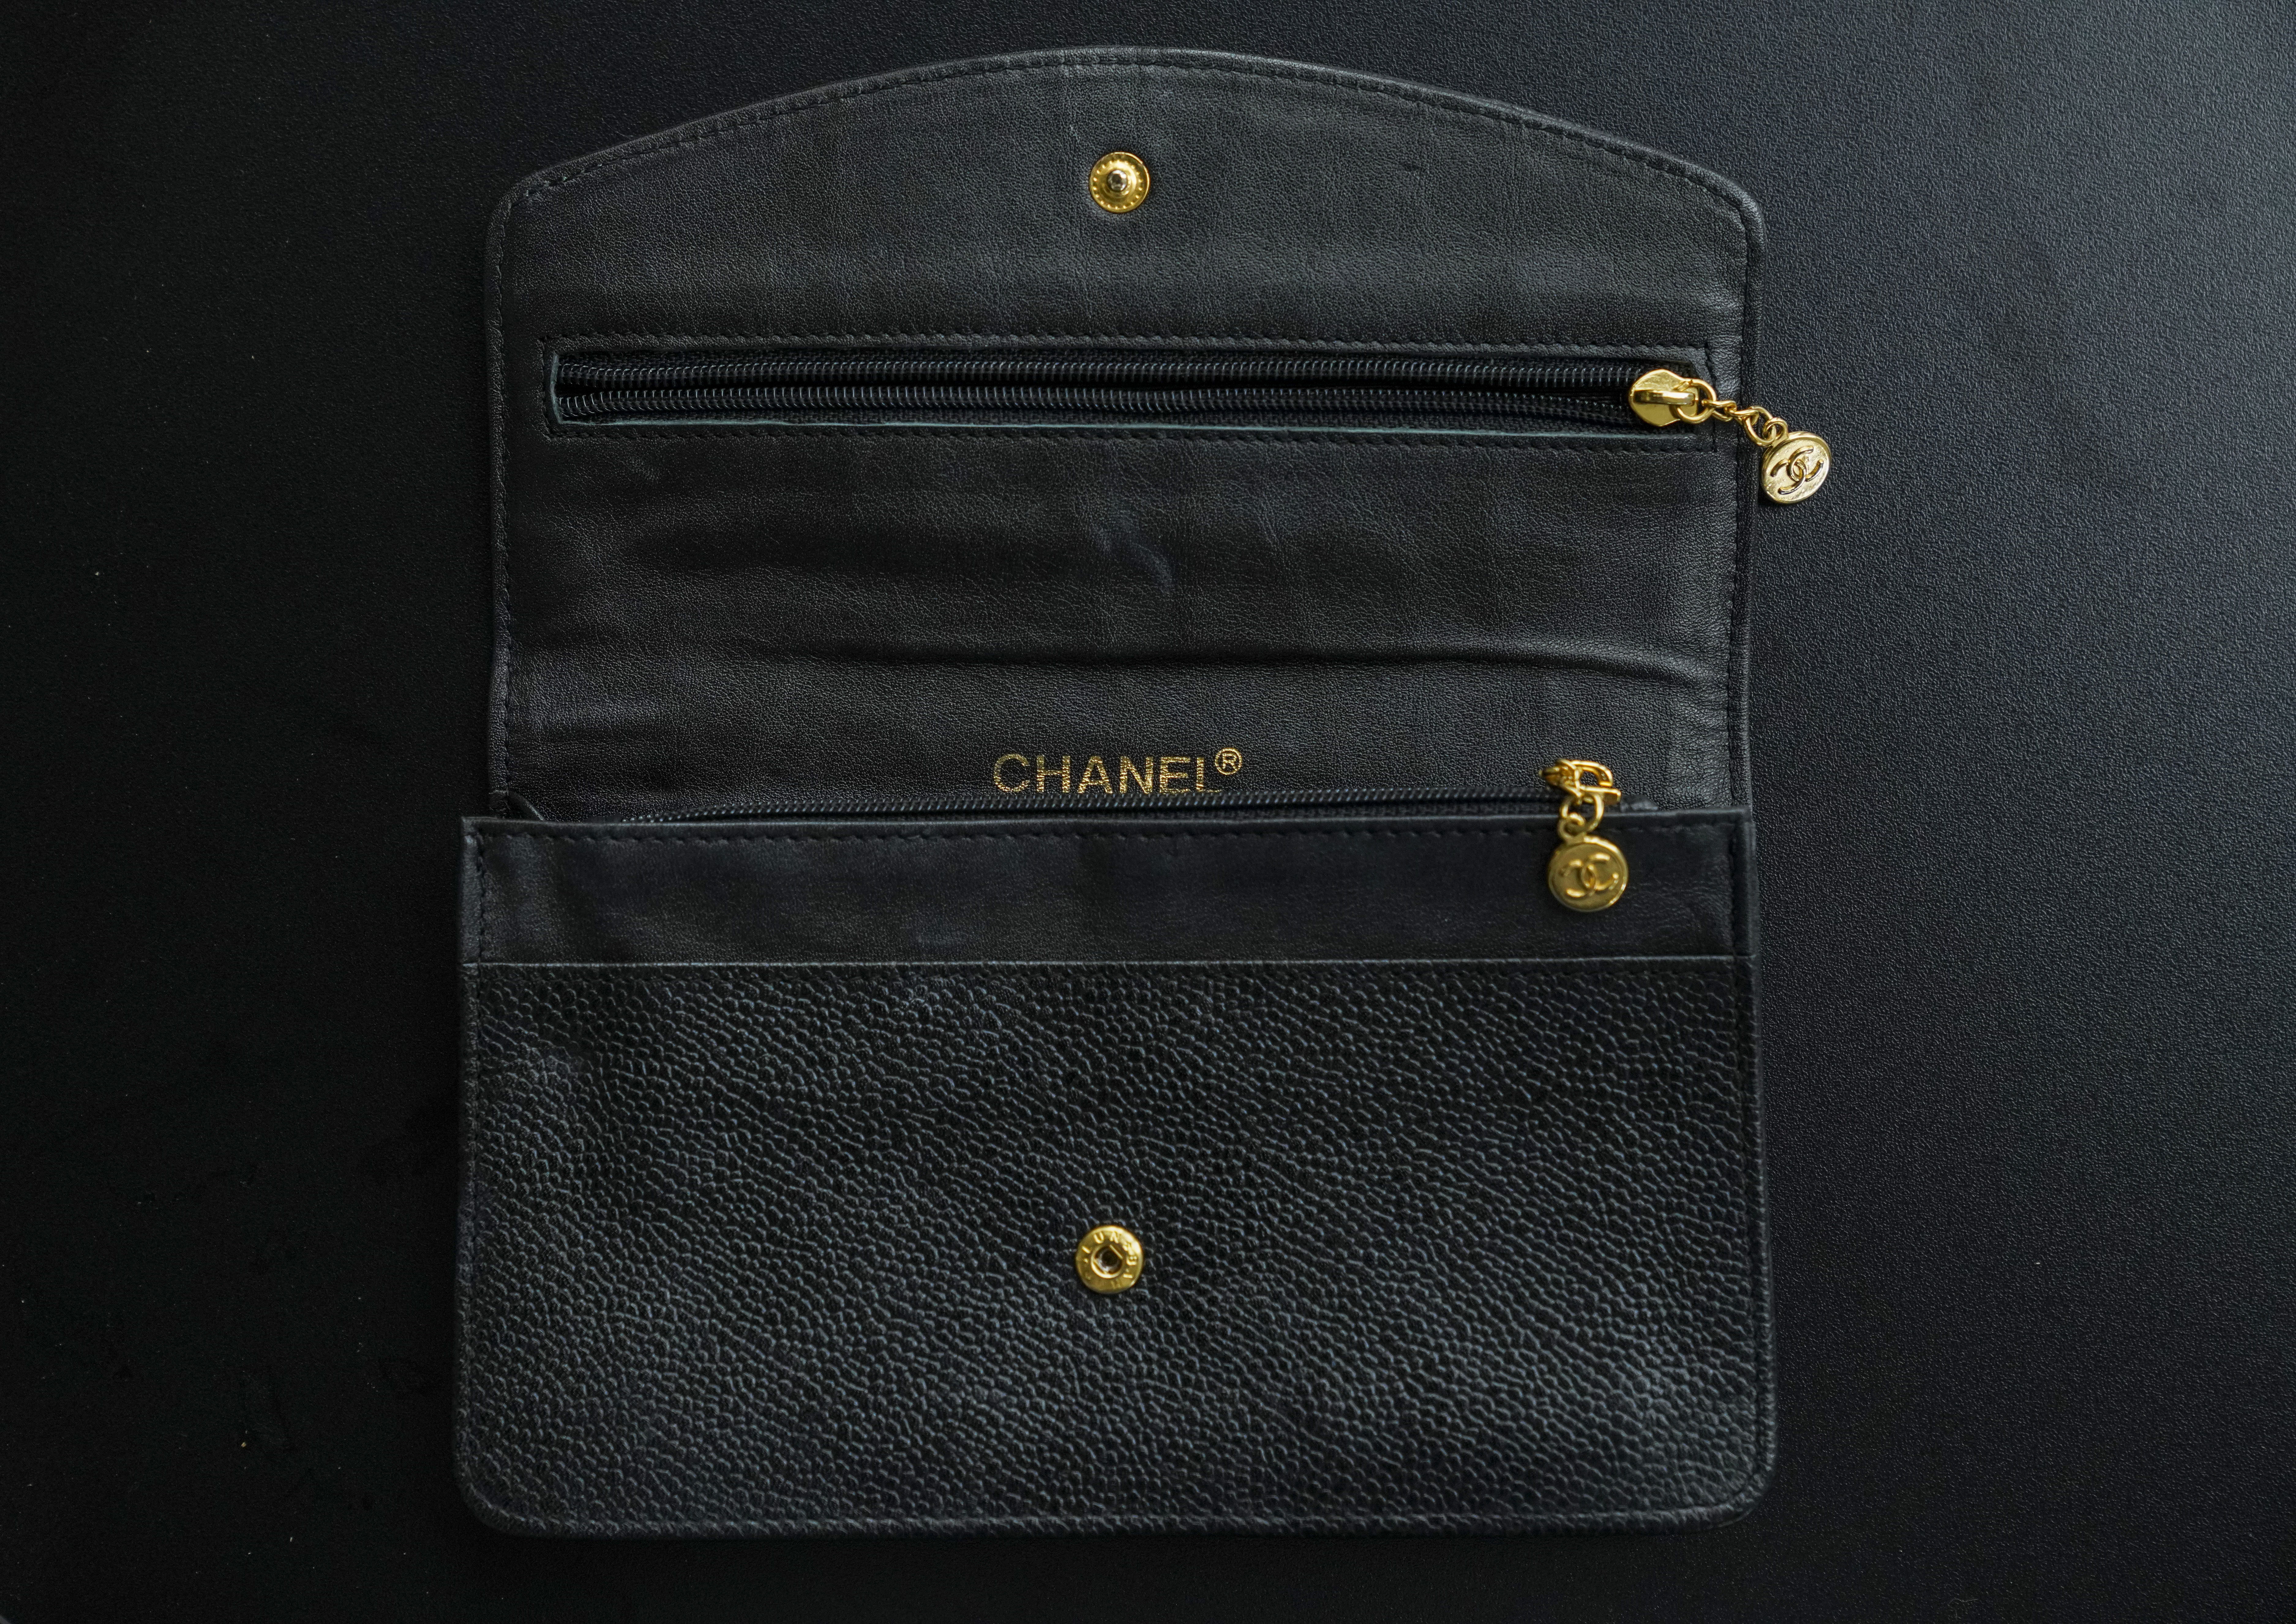 Chanel Bill Wallets for Women